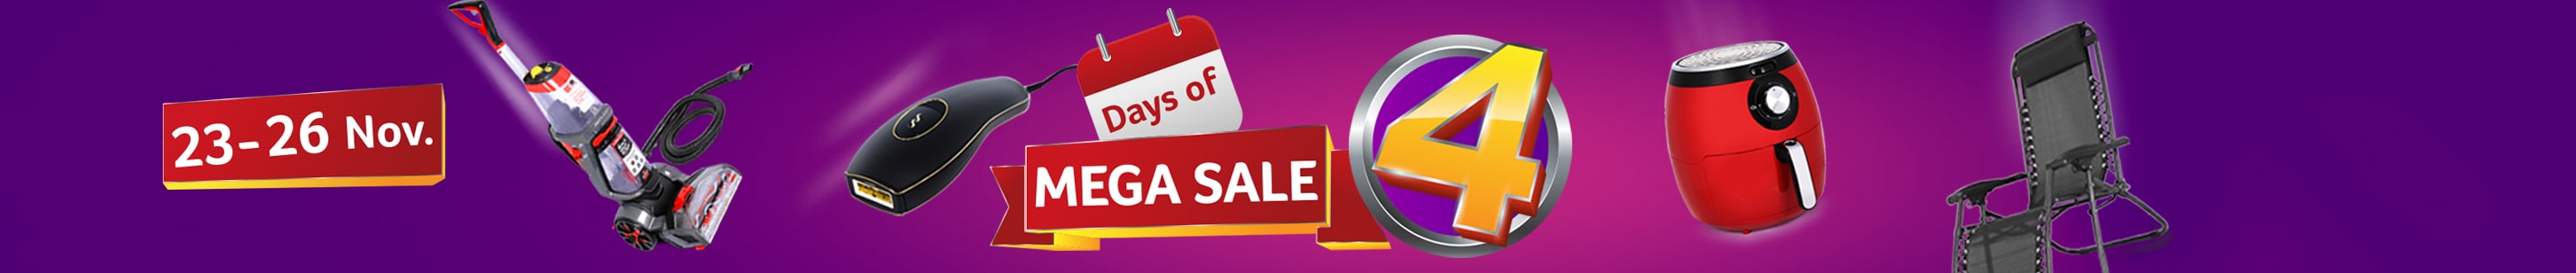 4 Days of Mega Sale